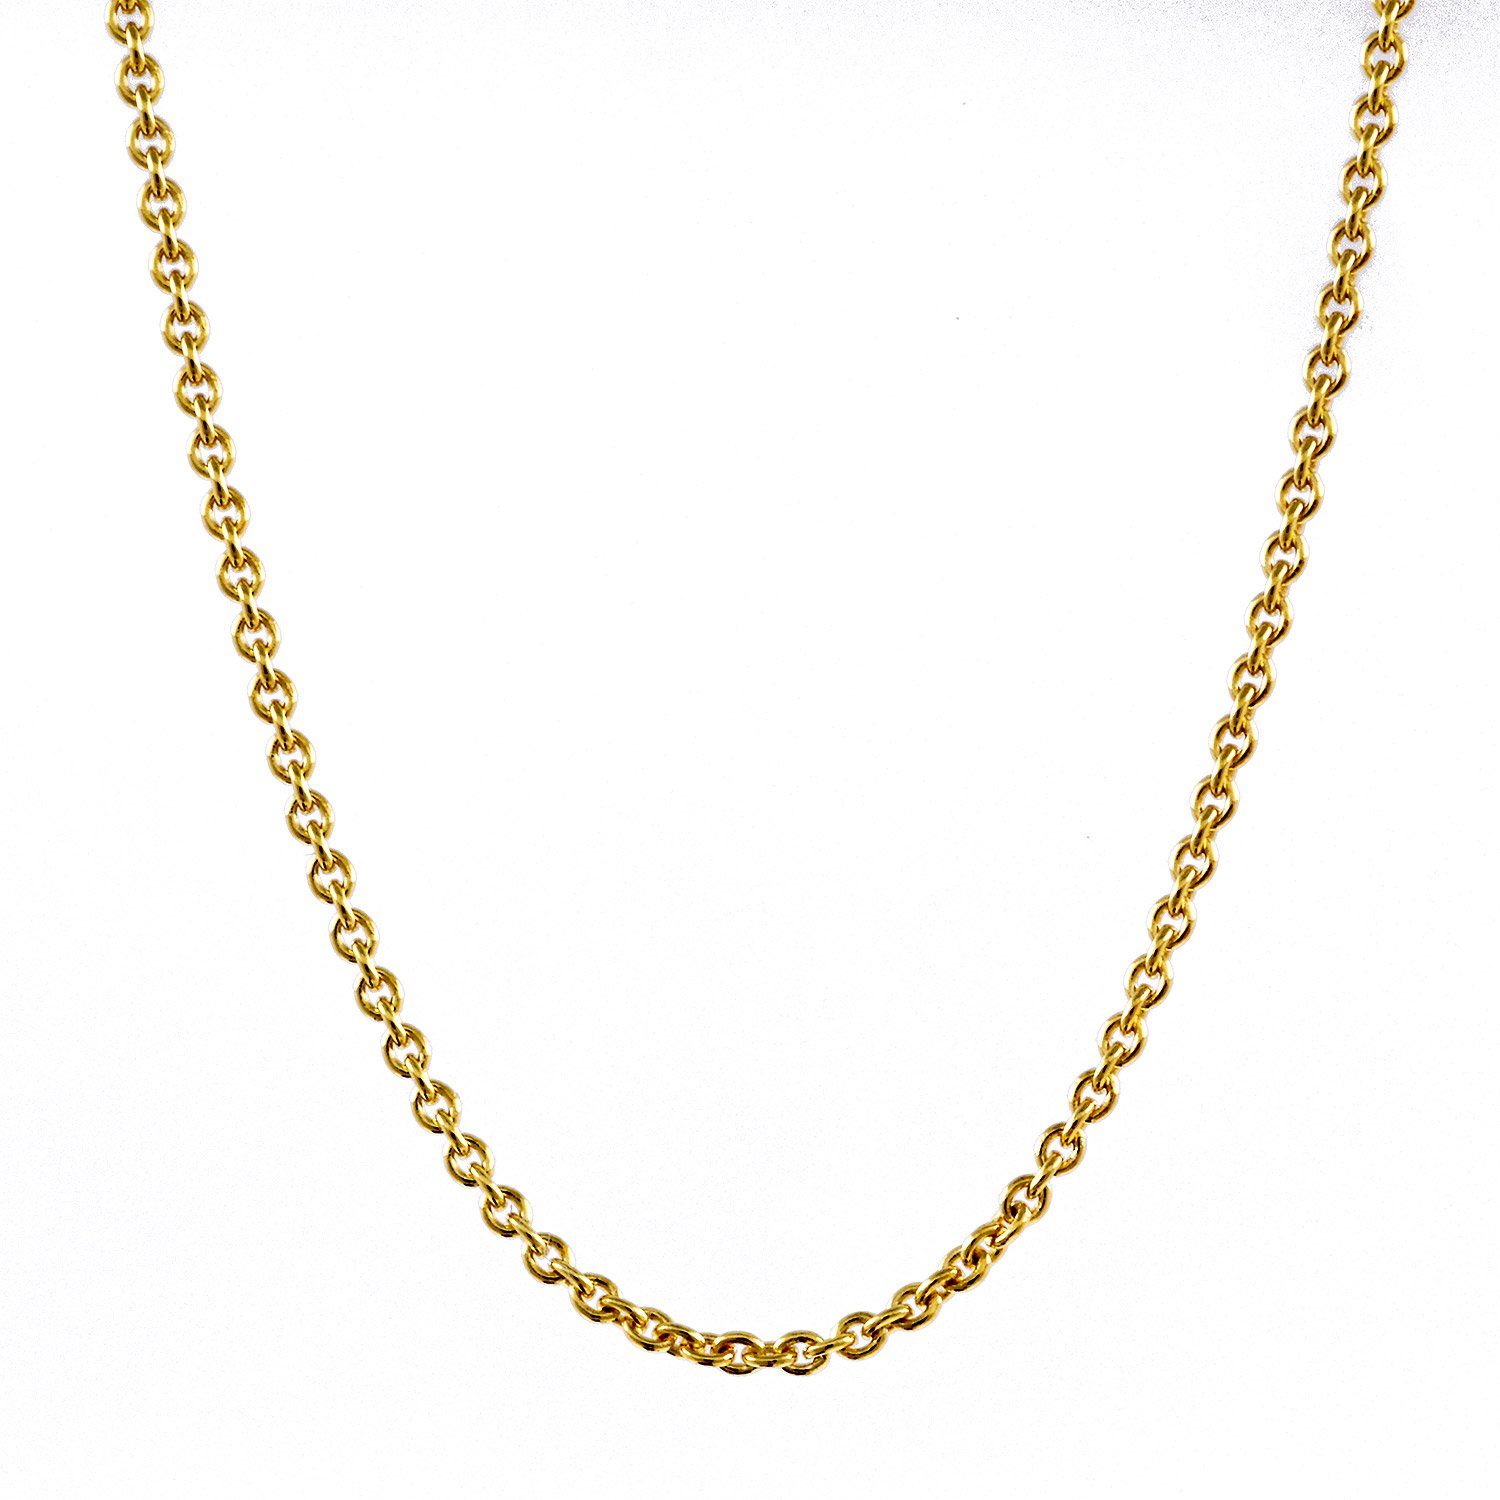 HOPLO Goldkette Ankerkette Halskette - Legierung 333 - 8 Karat Gold - Kettenbreite 0,8 mm - Kettenlänge 38 cm, Made in Germany